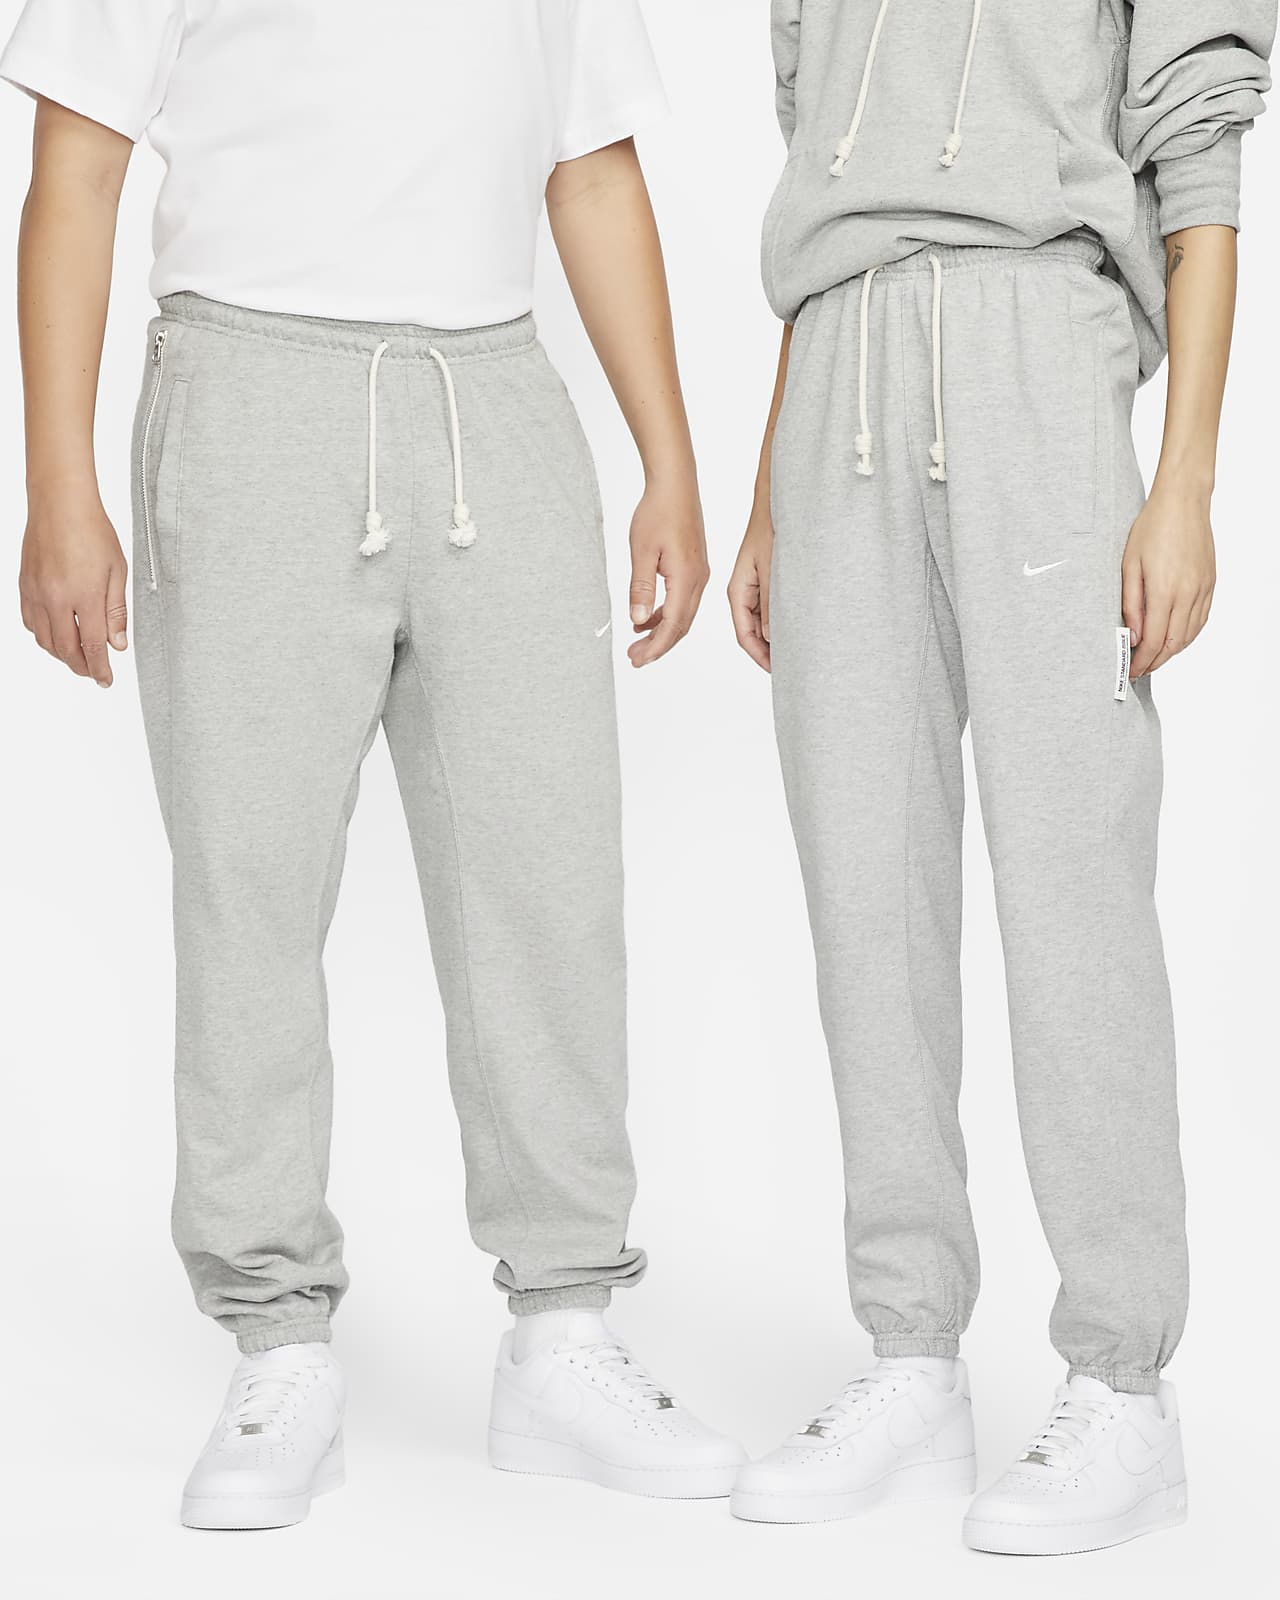 Pantalon de basket Dri-FIT Nike Standard Issue pour homme